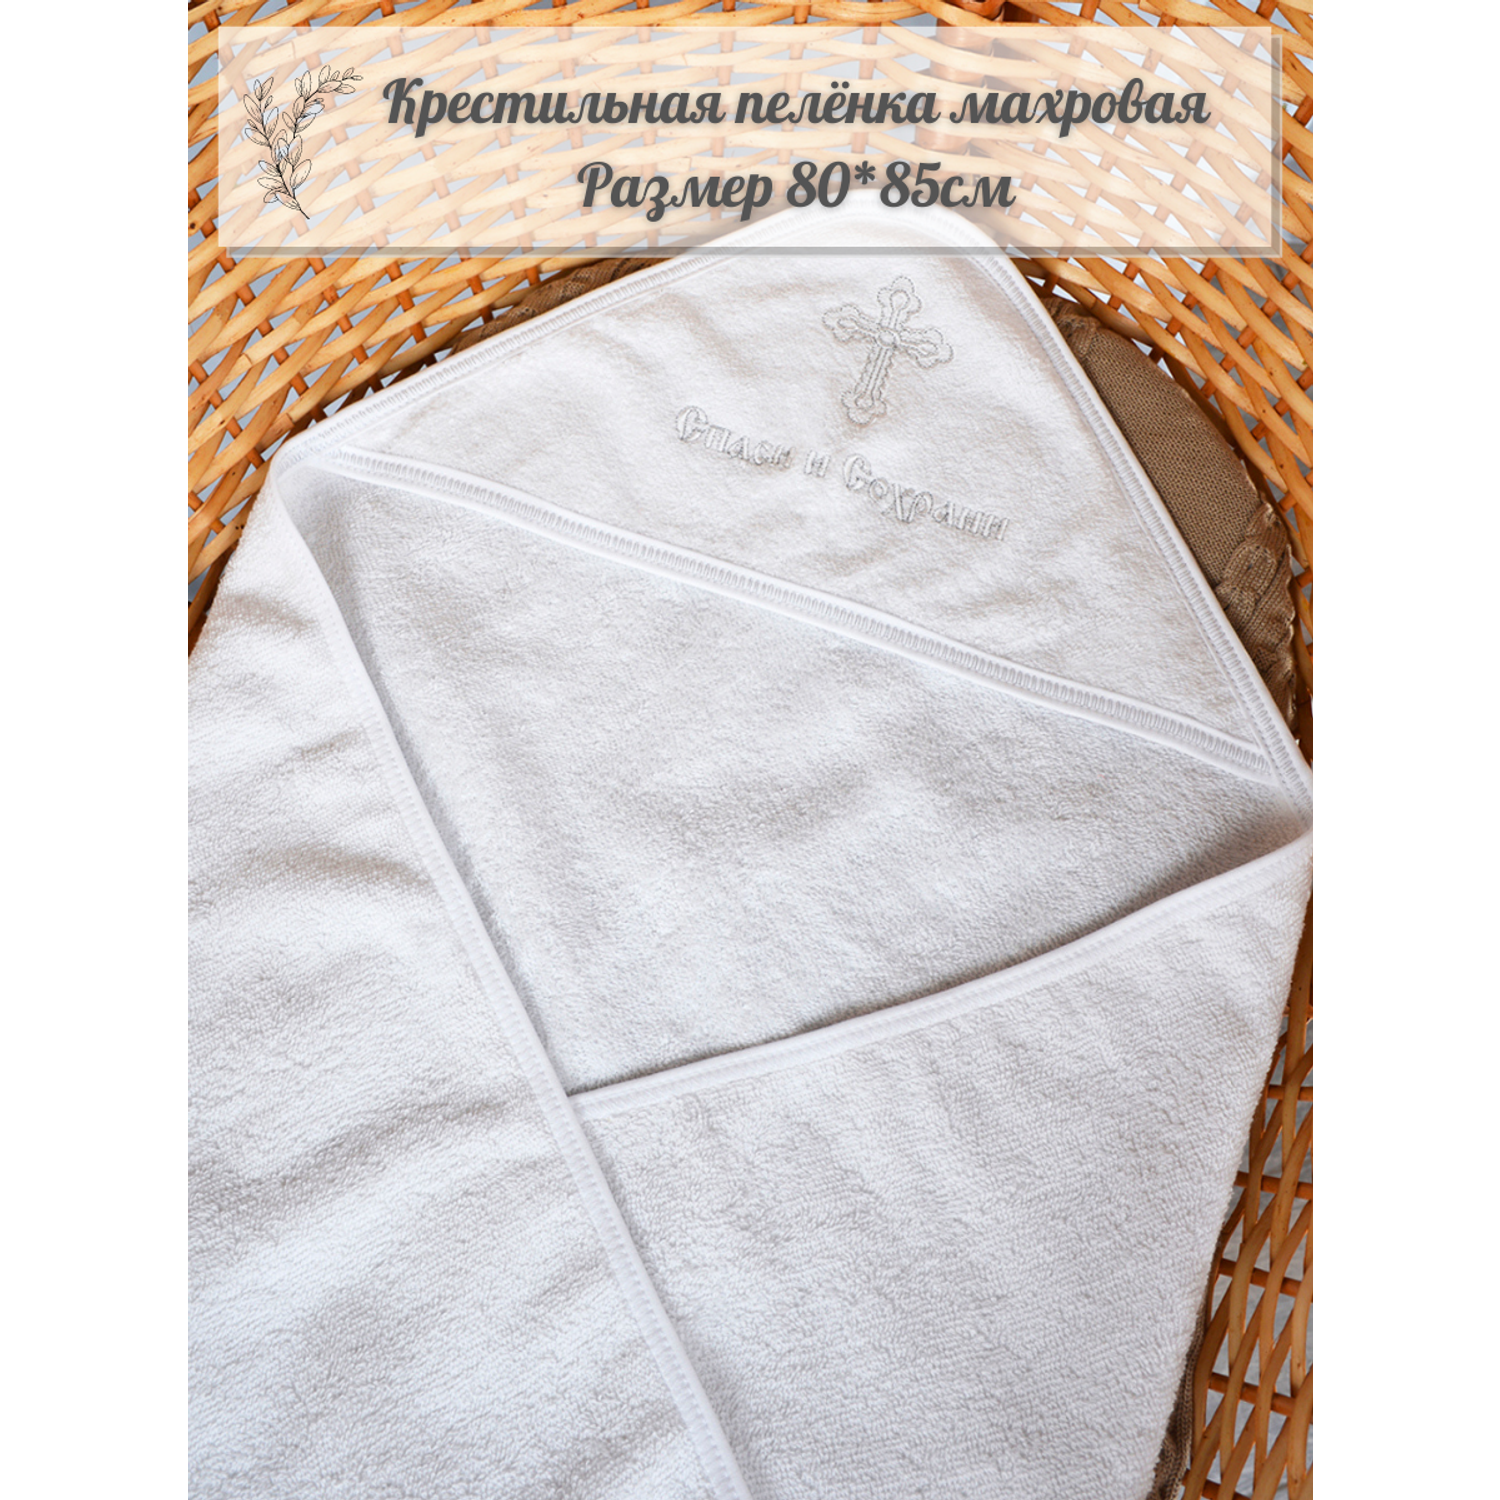 Полотенце LEO крестильное махровое с уголком 80*85 - фото 2